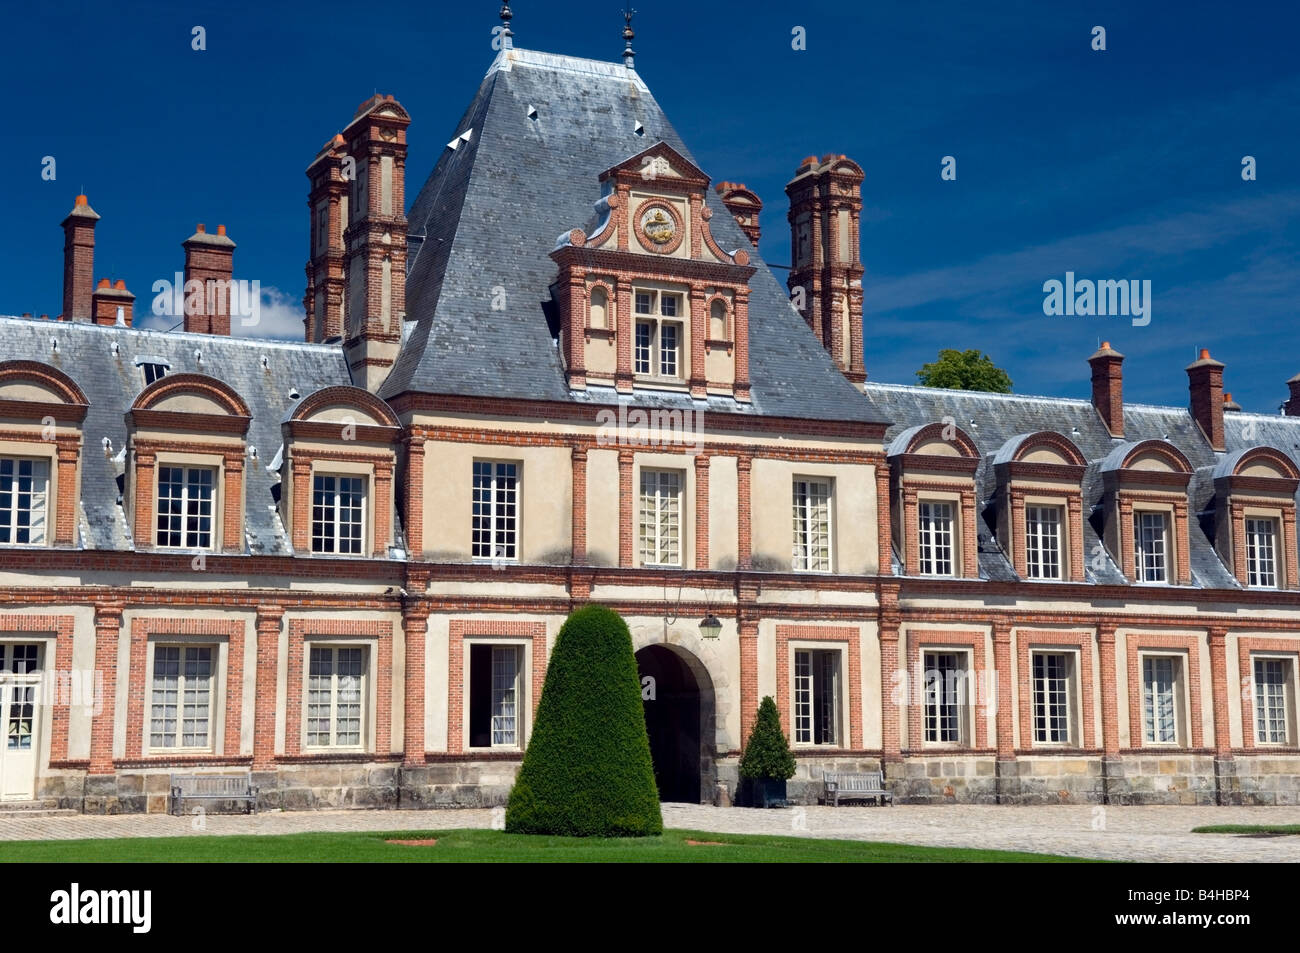 Cour du Cheval blanc, Château de Fontainebleau near Paris, France Stock Photo